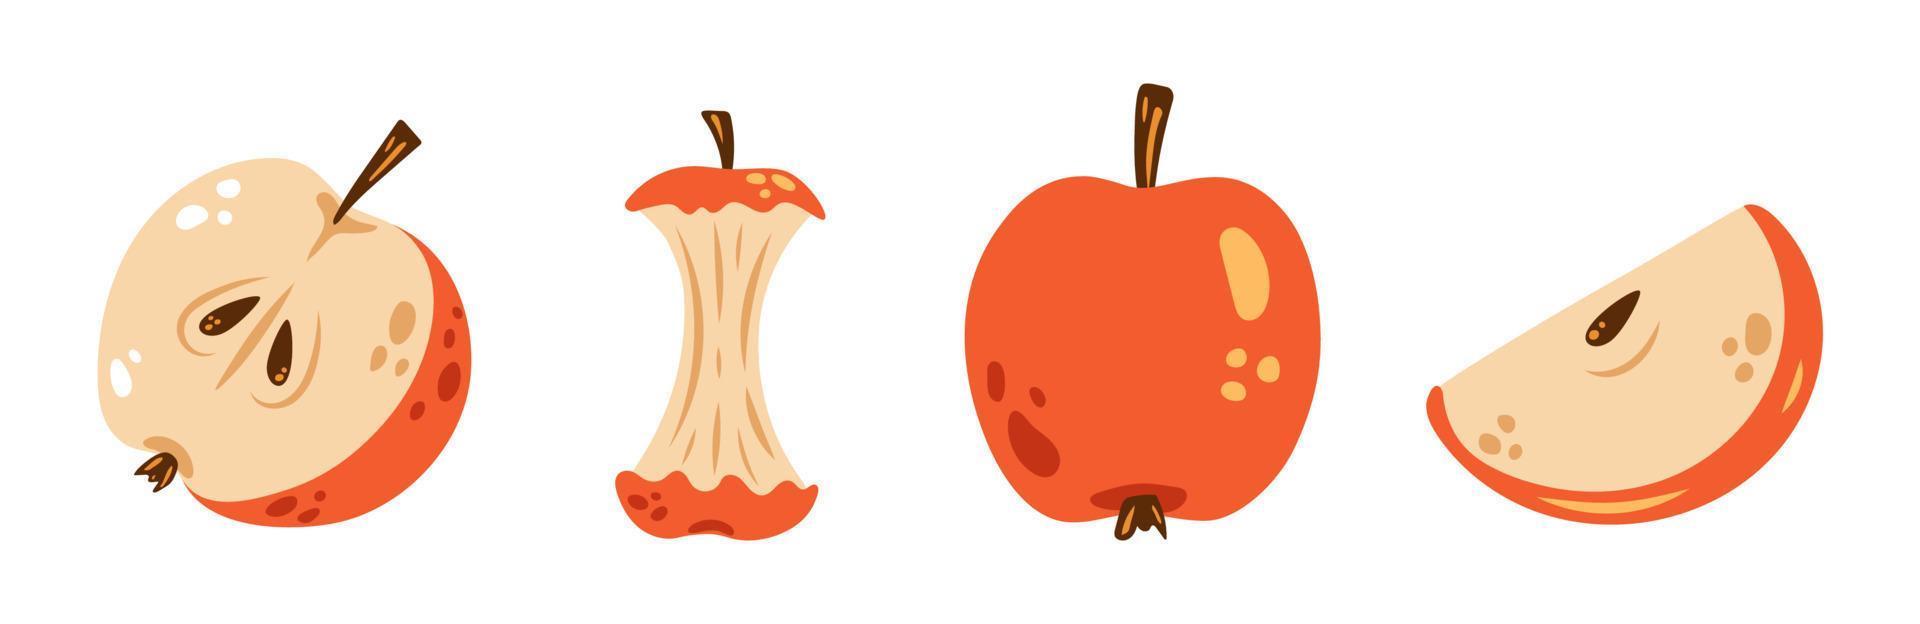 conjunto de maçã de vetor. lindas maçãs vermelhas em design plano. coleção colorida de maçã inteira, metade de maçã, fatia e núcleo de maçã. vetor